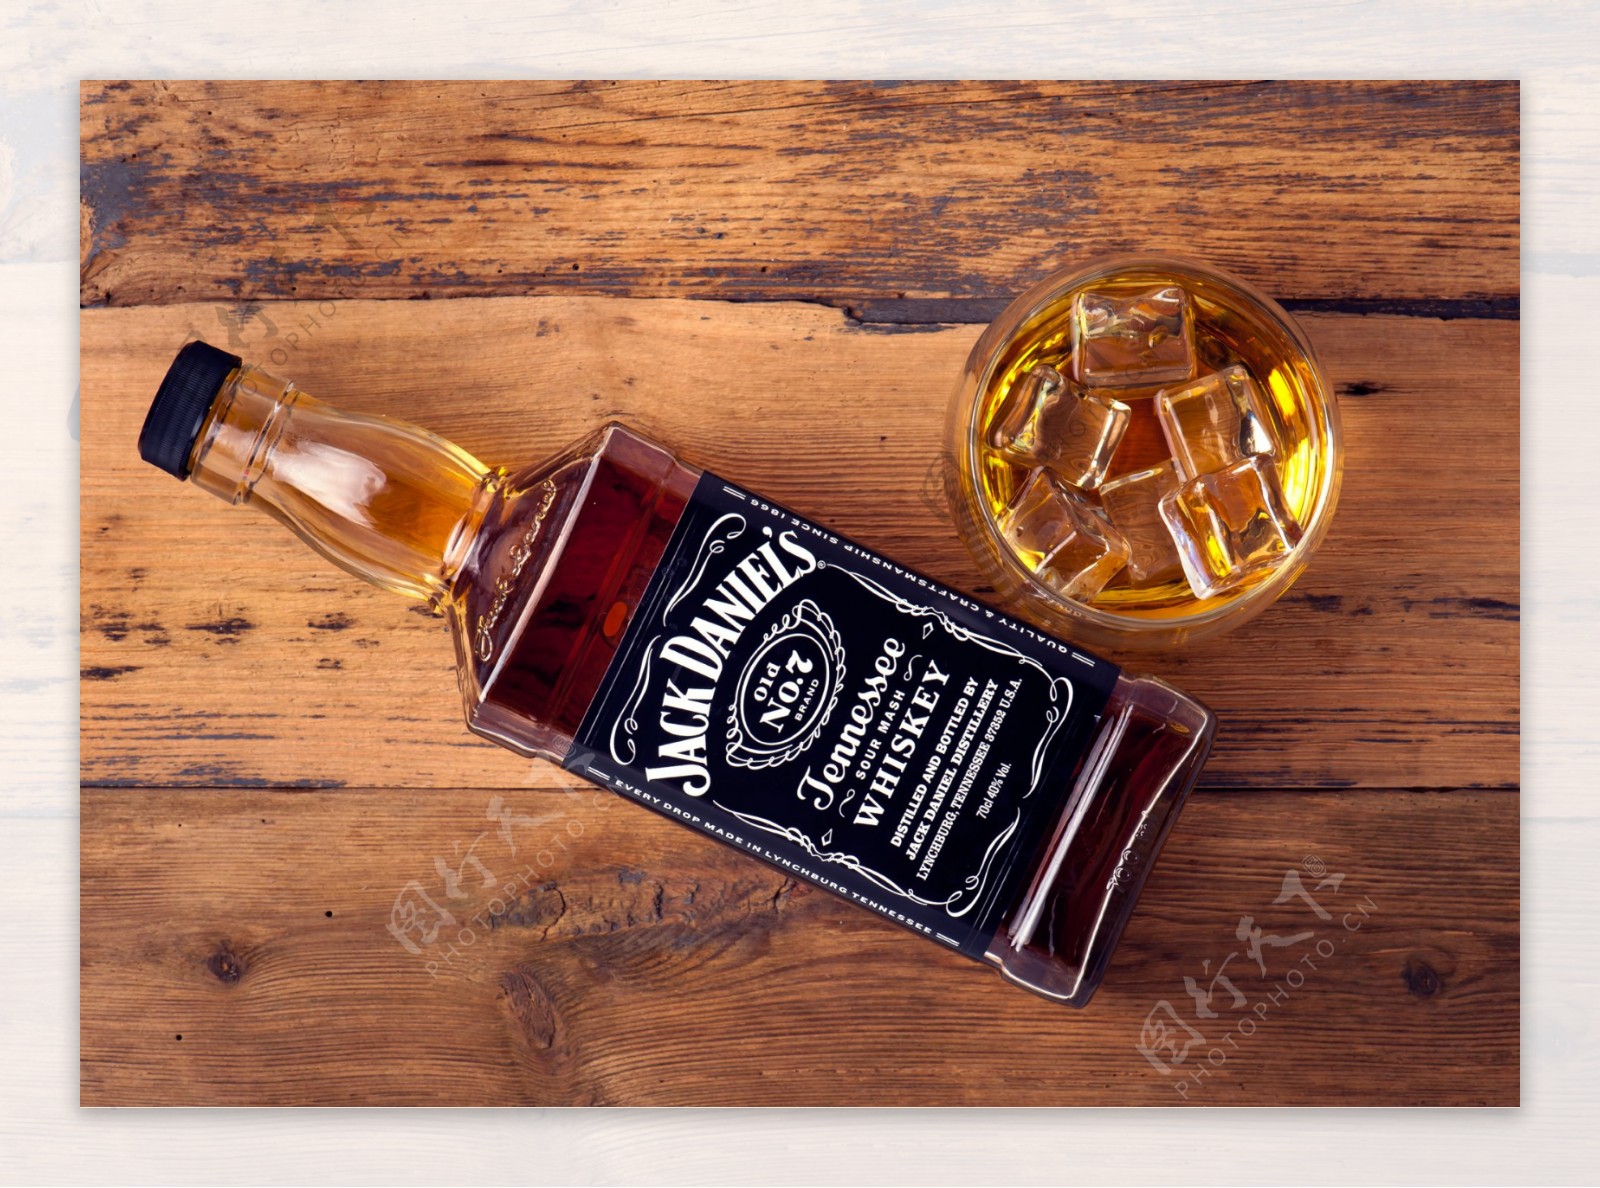 杰克丹尼威士忌图片